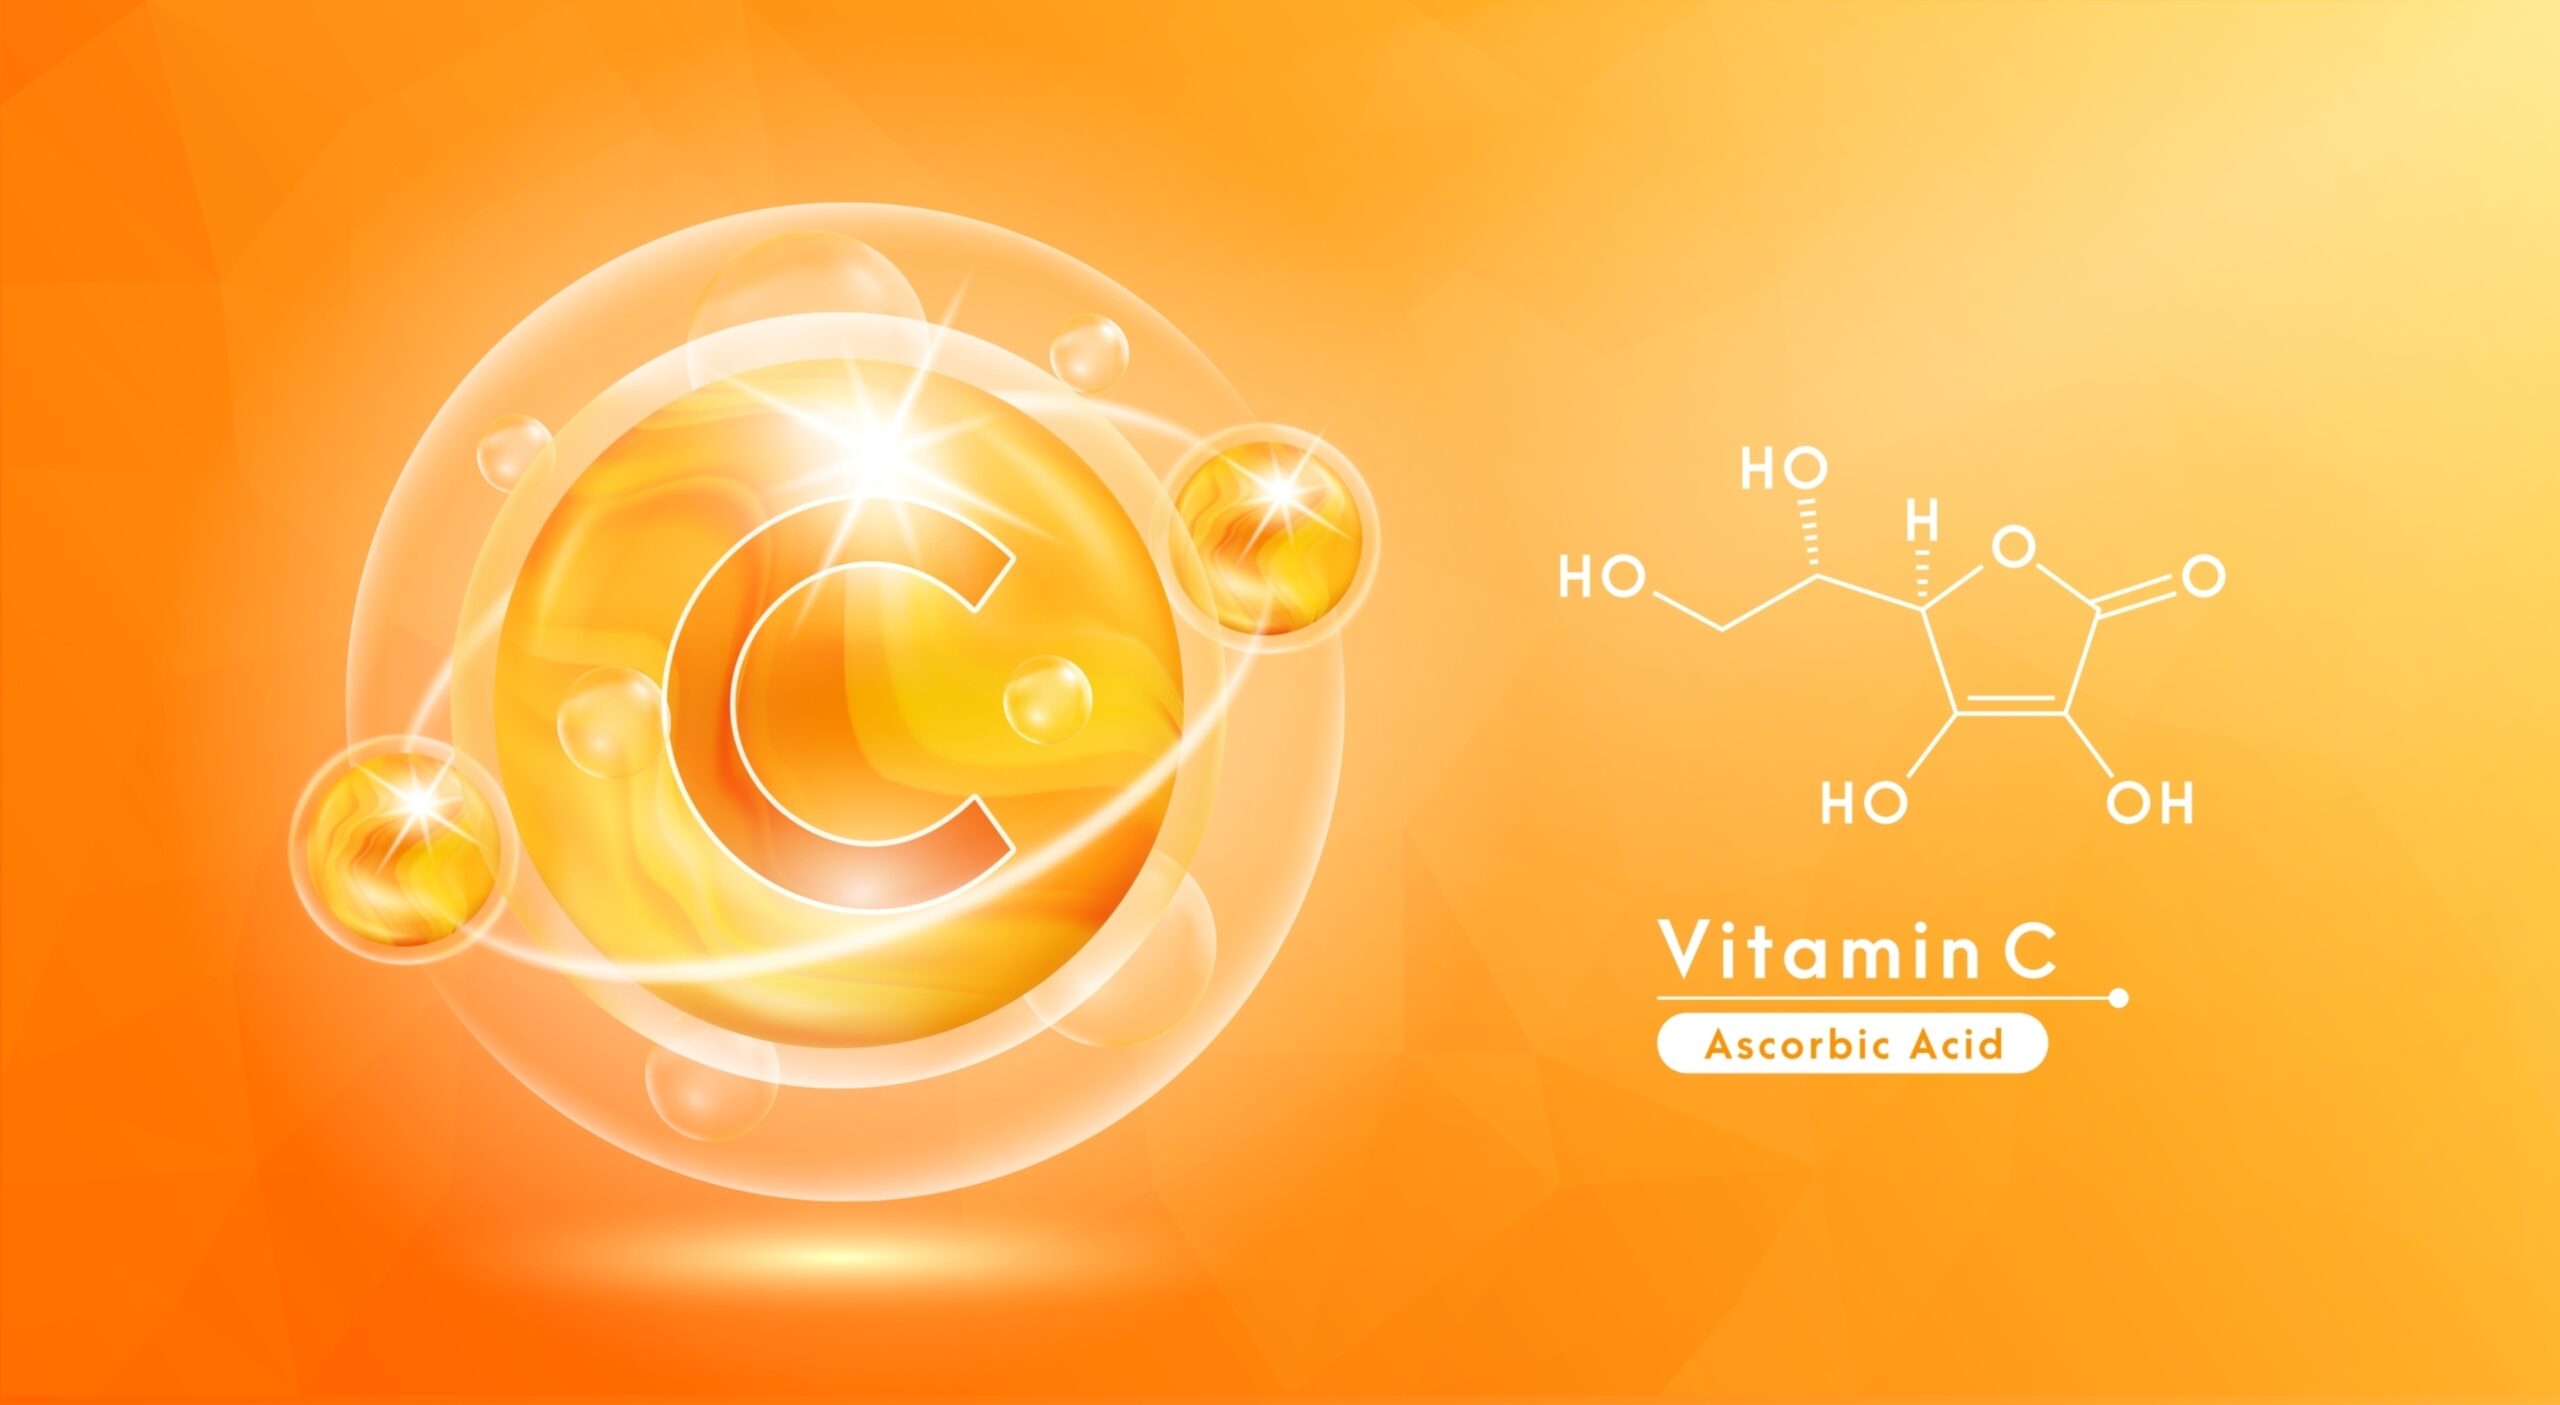 บริการทดสอบปริมาณสารวิตามินซี (Vitamin C) ในสมุนไพรหรือผลิตภัณฑ์